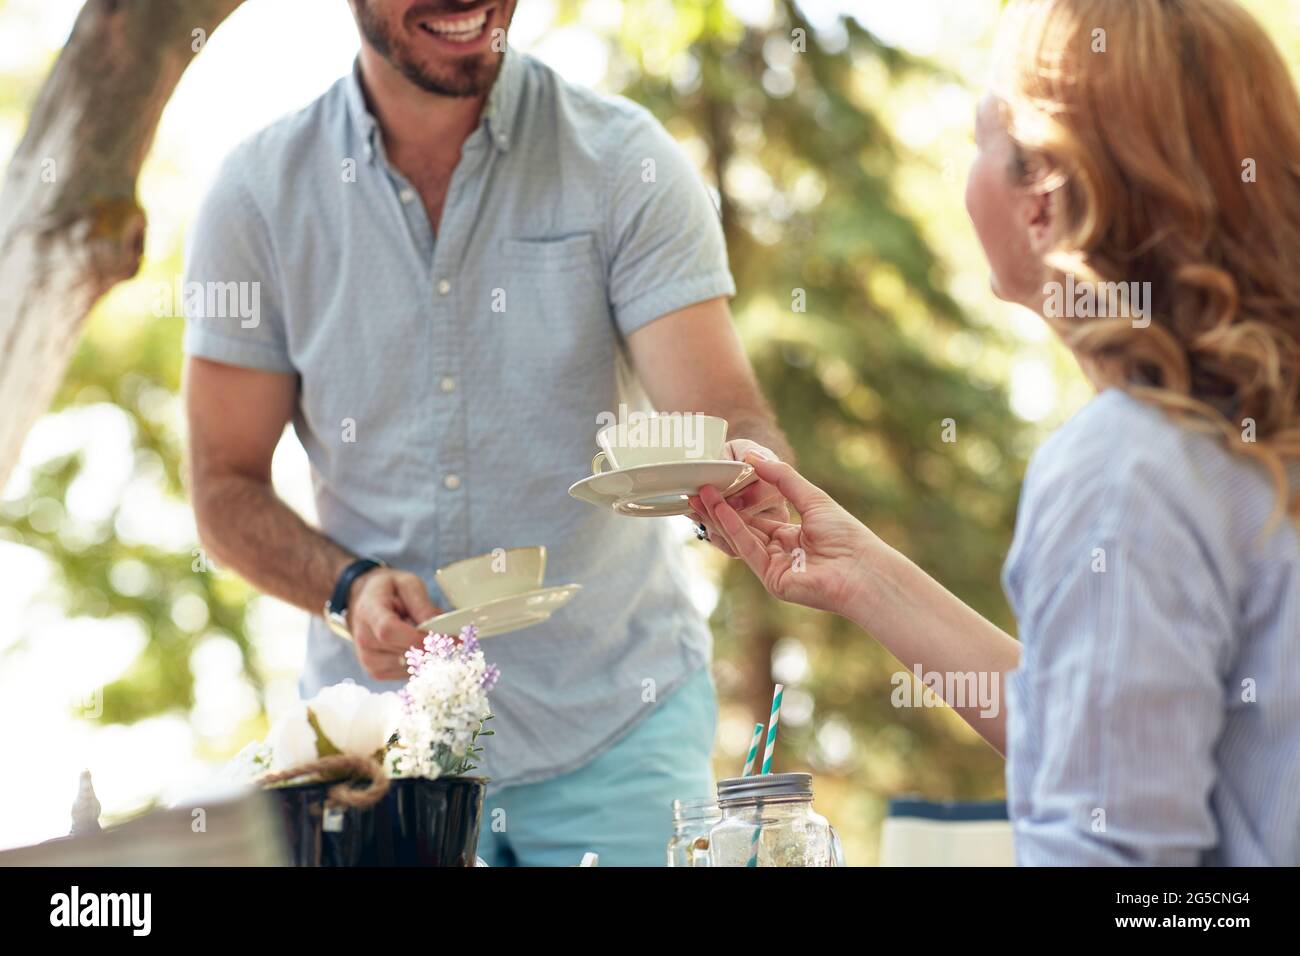 immagine ritagliata del marito ardito che dà una tazza di caffè alla moglie con un grande sorriso Foto Stock